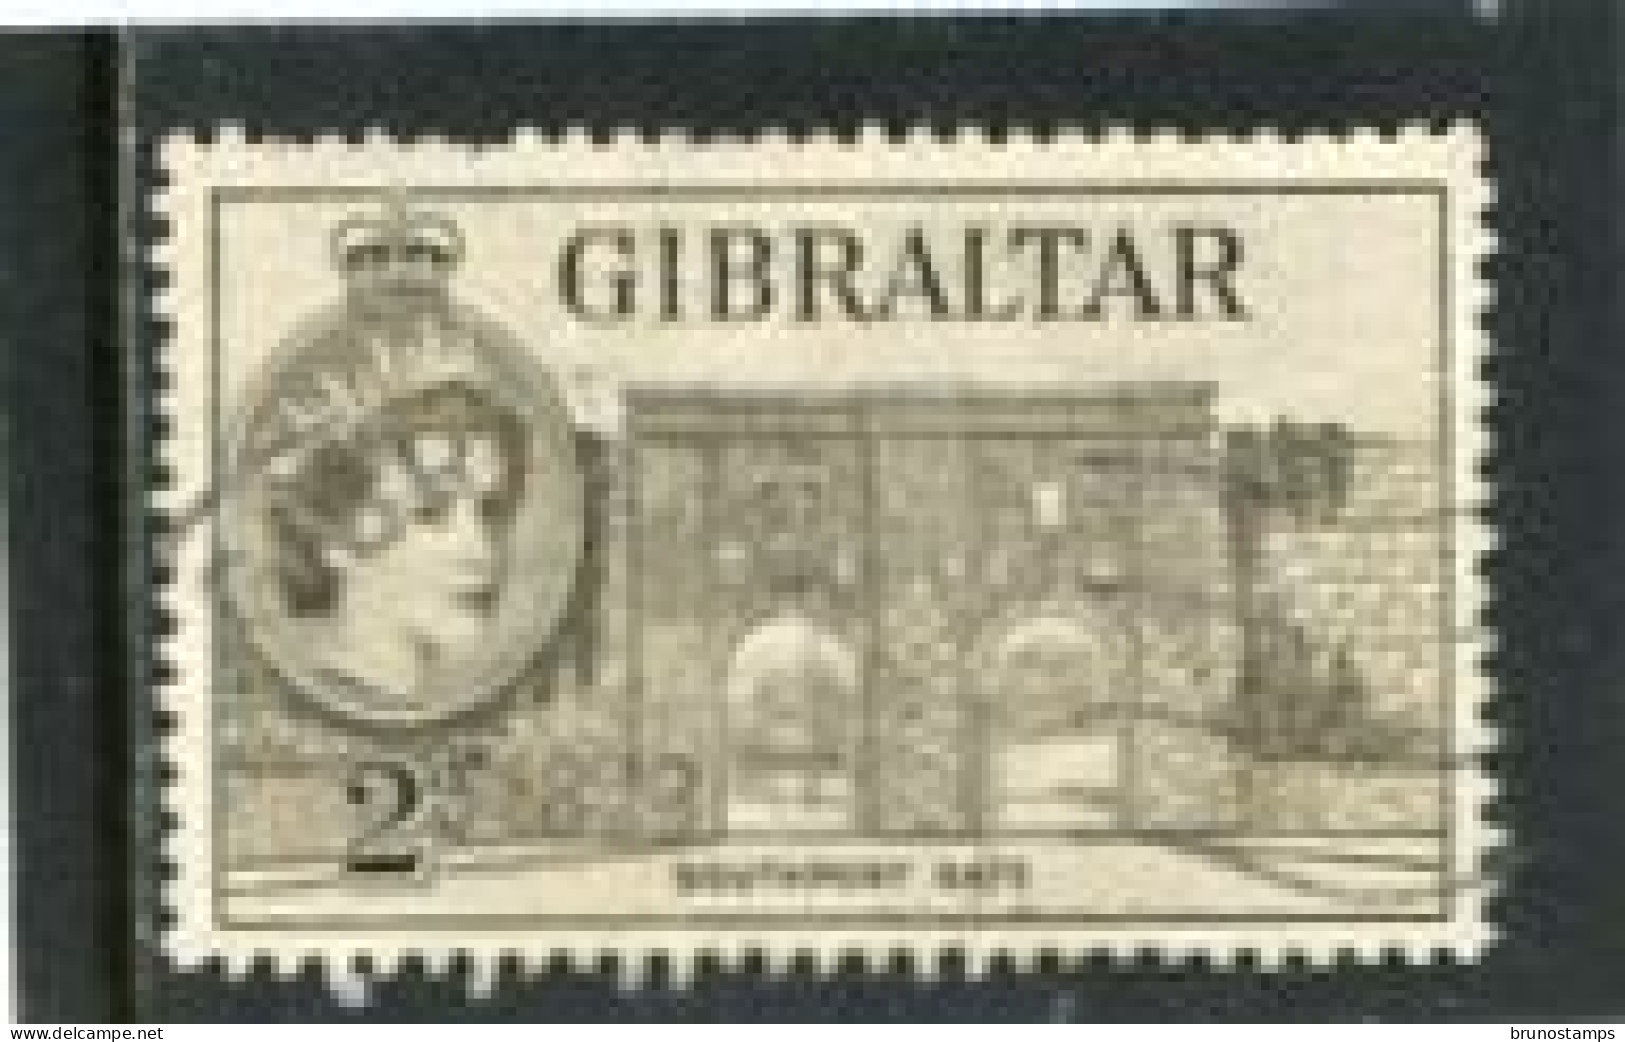 GIBRALTAR - 1953 2d  DEFINITIVE  FINE USED - Gibraltar